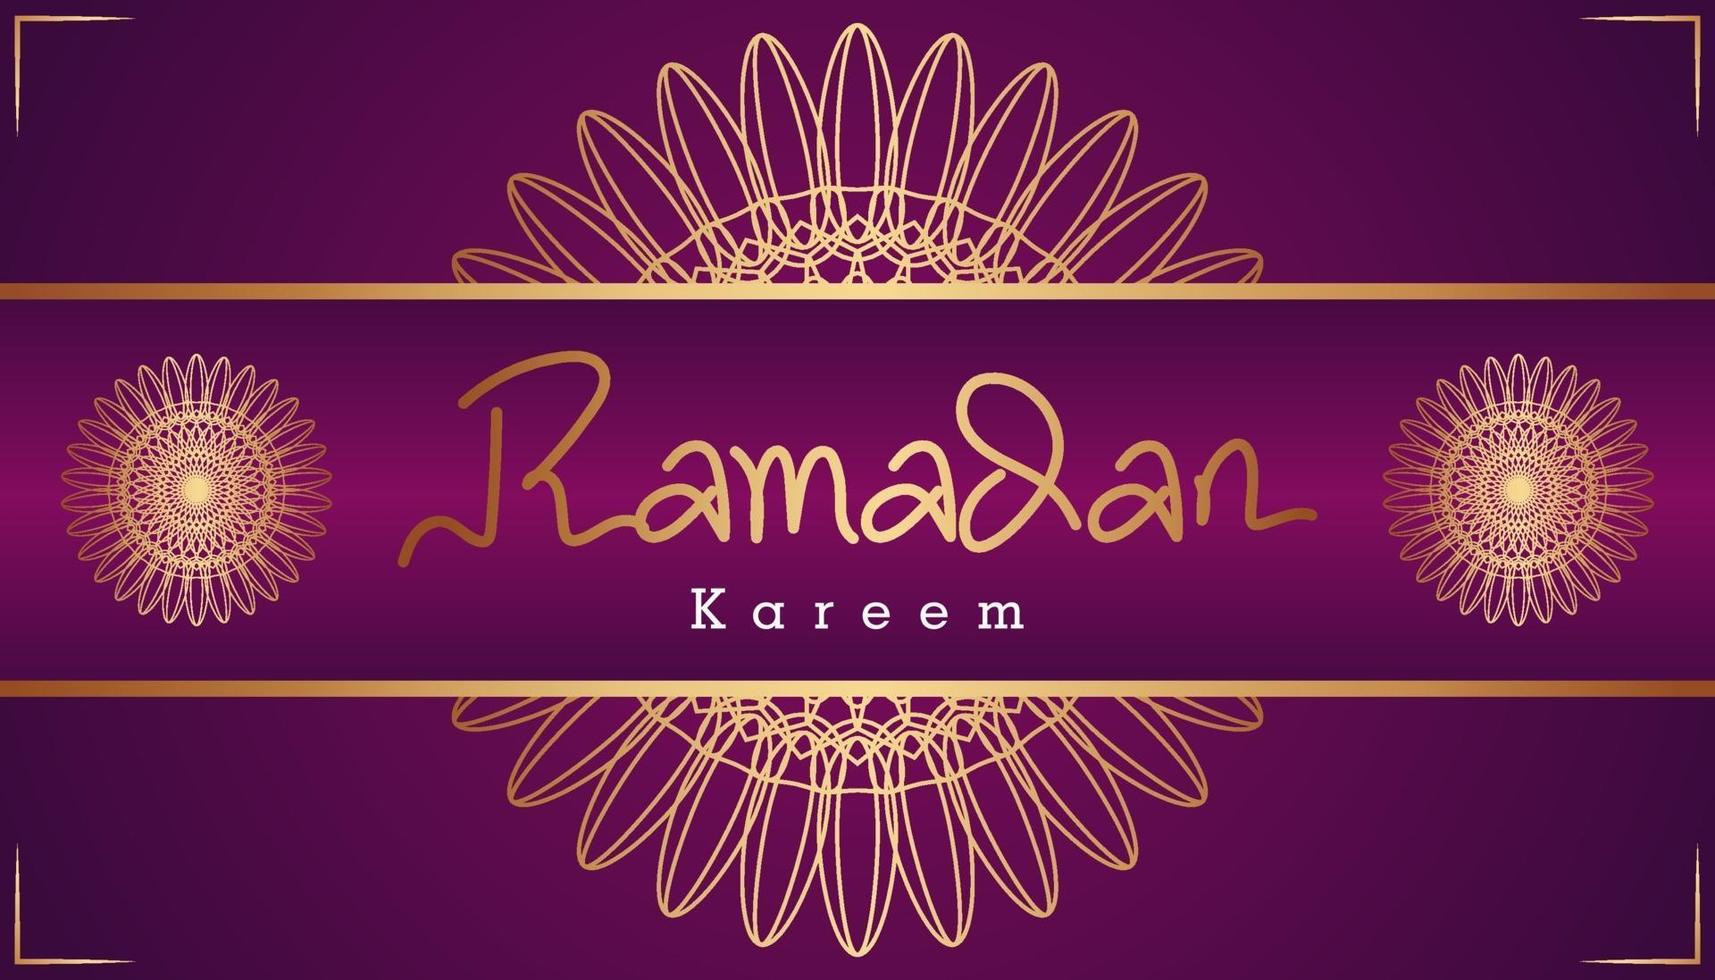 bella viola e oro calligrafia araba ramadan kareem testo e disegno del modello ornamentale sfondo. illustrazione vettoriale